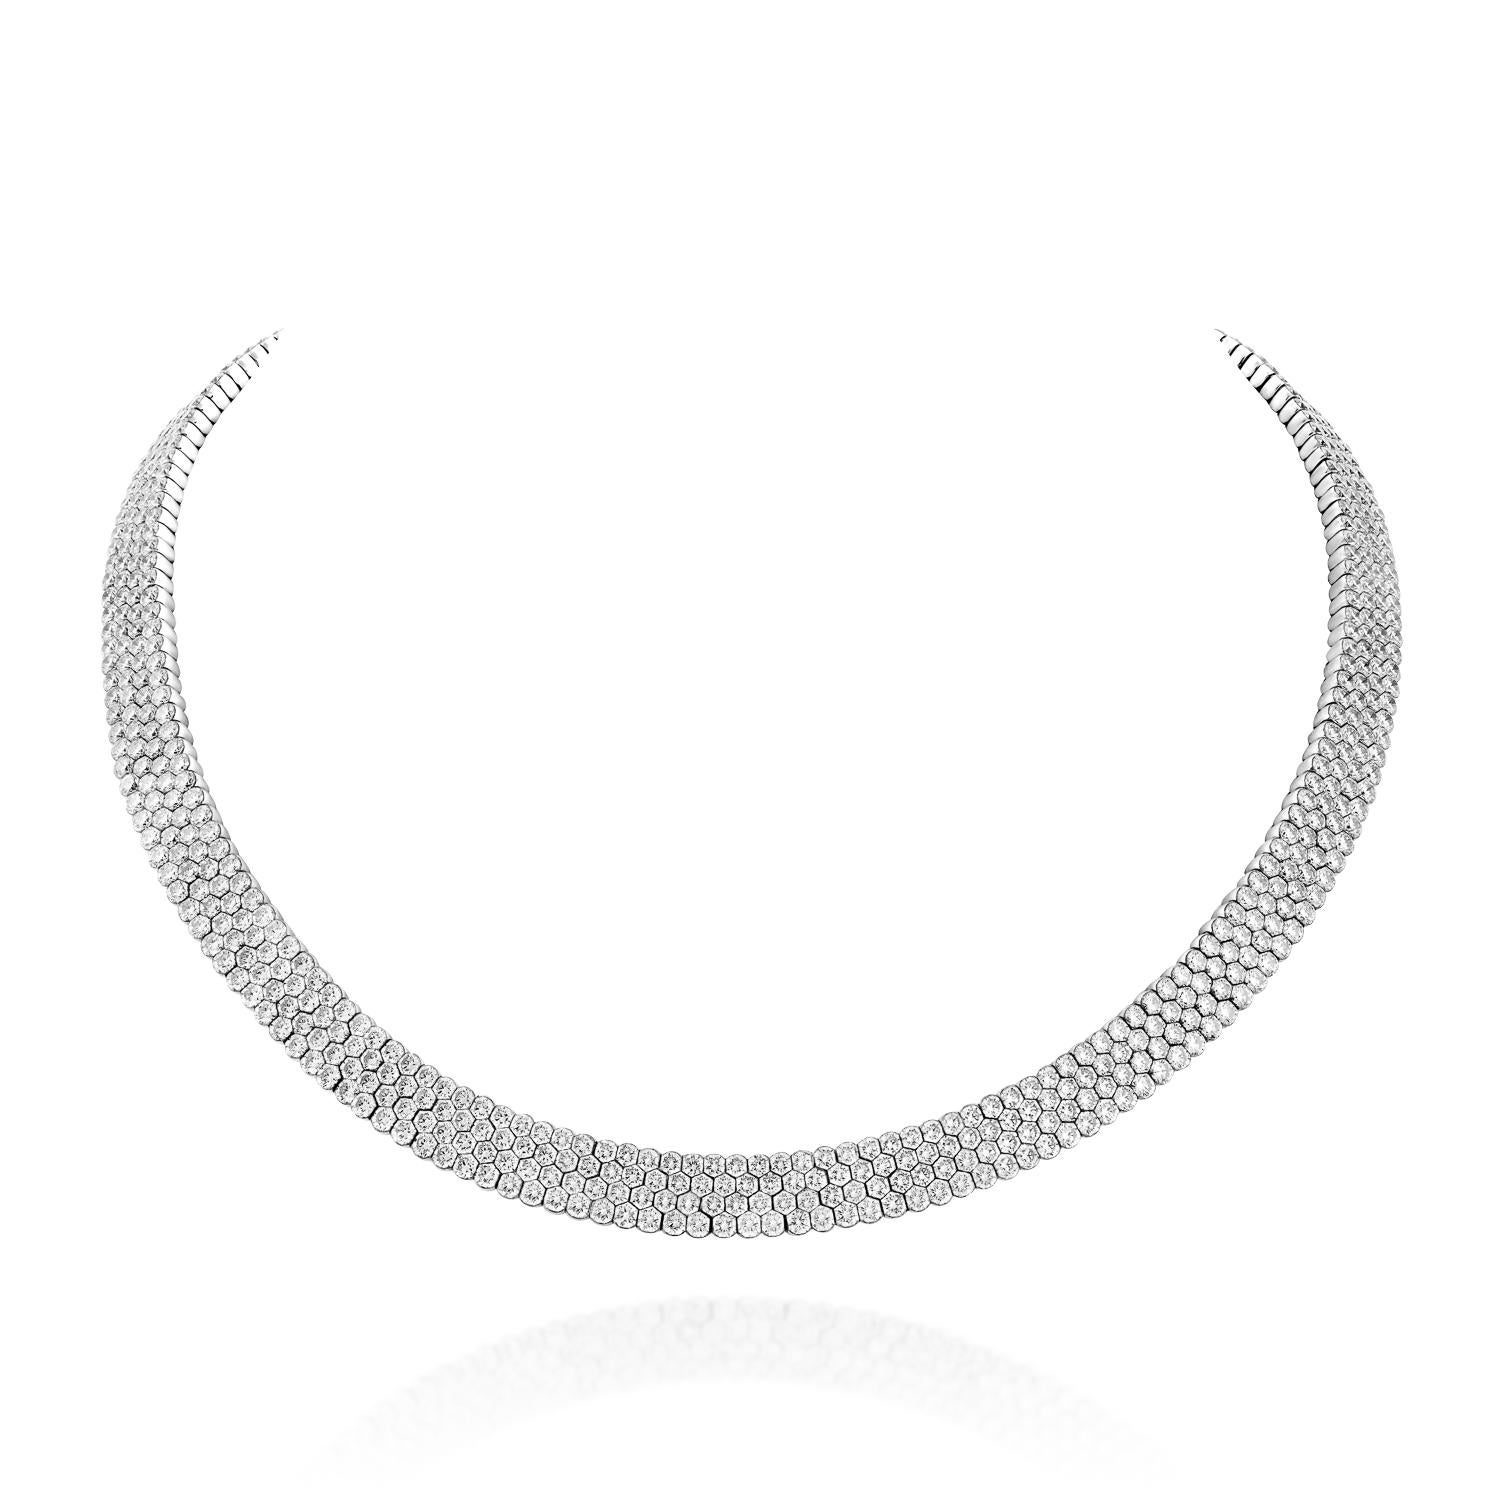 Offrez-vous le luxe ultime avec le collier Geraldo 57,10 carats 4 rangs de diamants à sertissage invisible en or blanc, un véritable chef-d'œuvre qui respire l'opulence et l'élégance. Dès que vous l'enfilerez, la beauté et l'éclat de ce collier vous